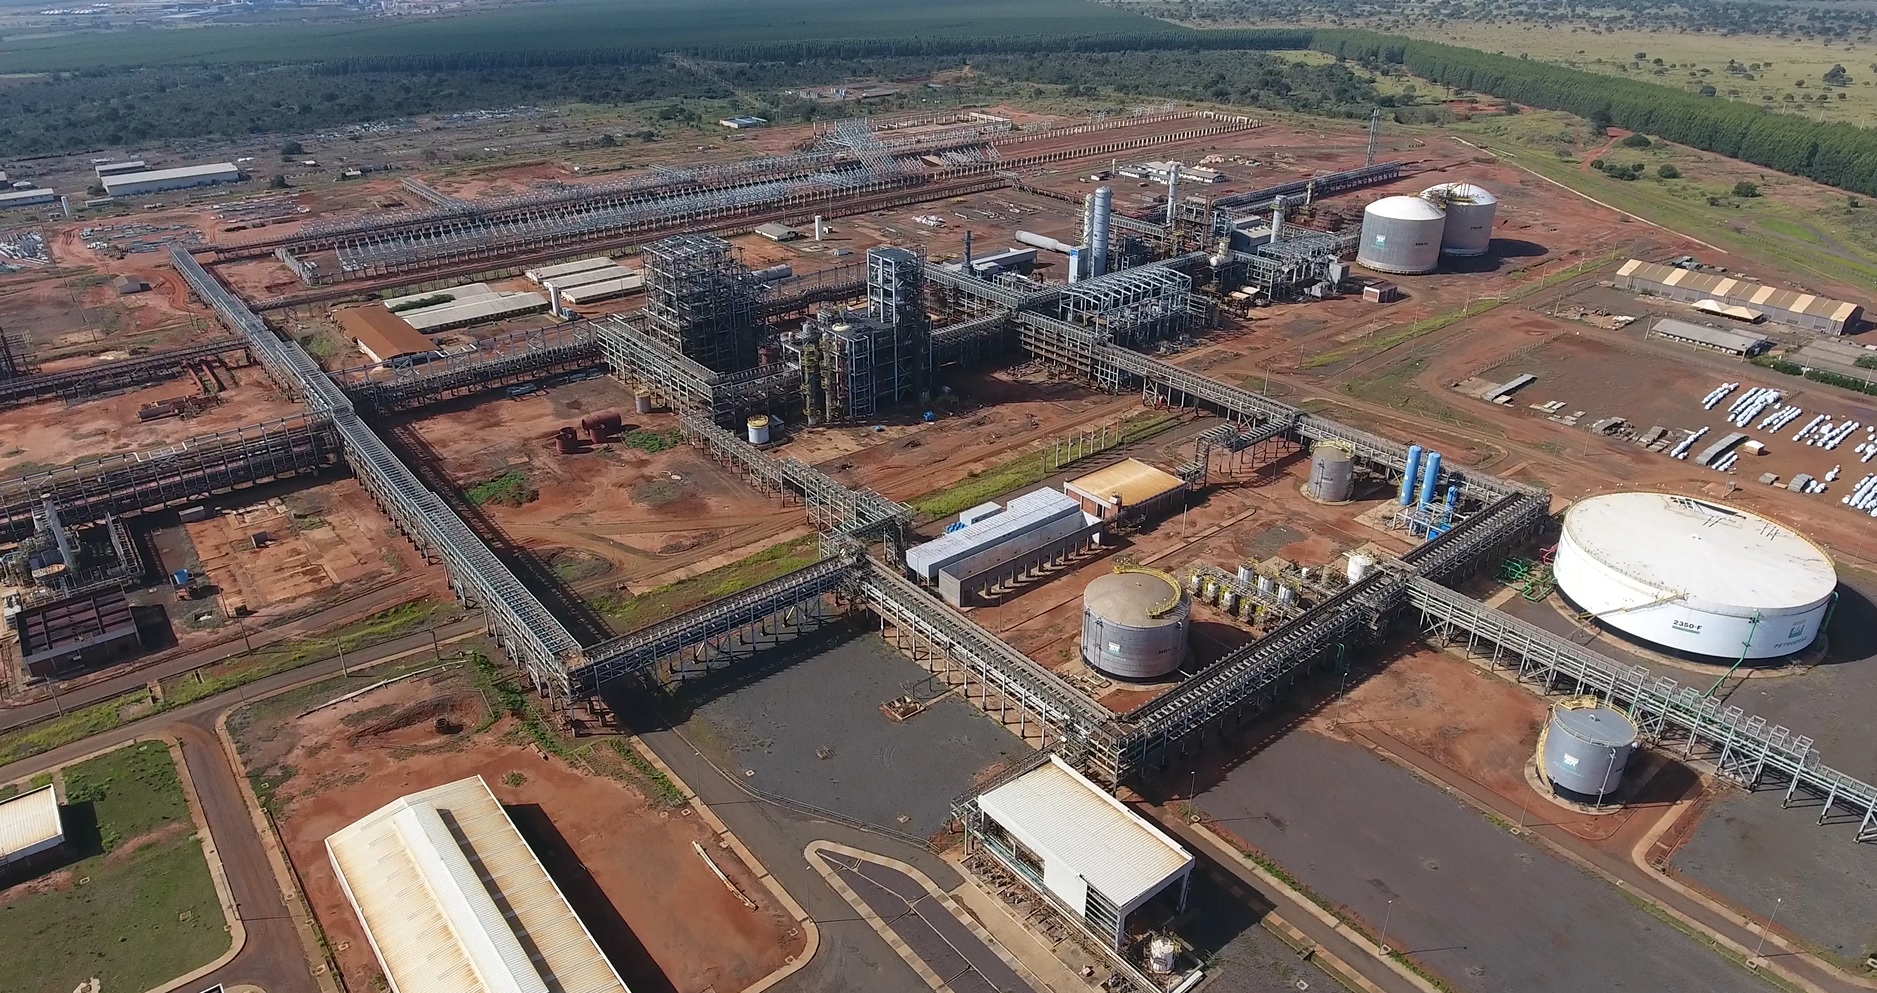 O Governo Lula pretende dar continuidade e finalizar as obras paralisadas da maior fábrica de fertilizantes do Brasil. Após a paralisação do desinvestimento da Petrobras na UFN3, é esperado que aconteçam negociações para a continuidade das operações da estatal na planta.